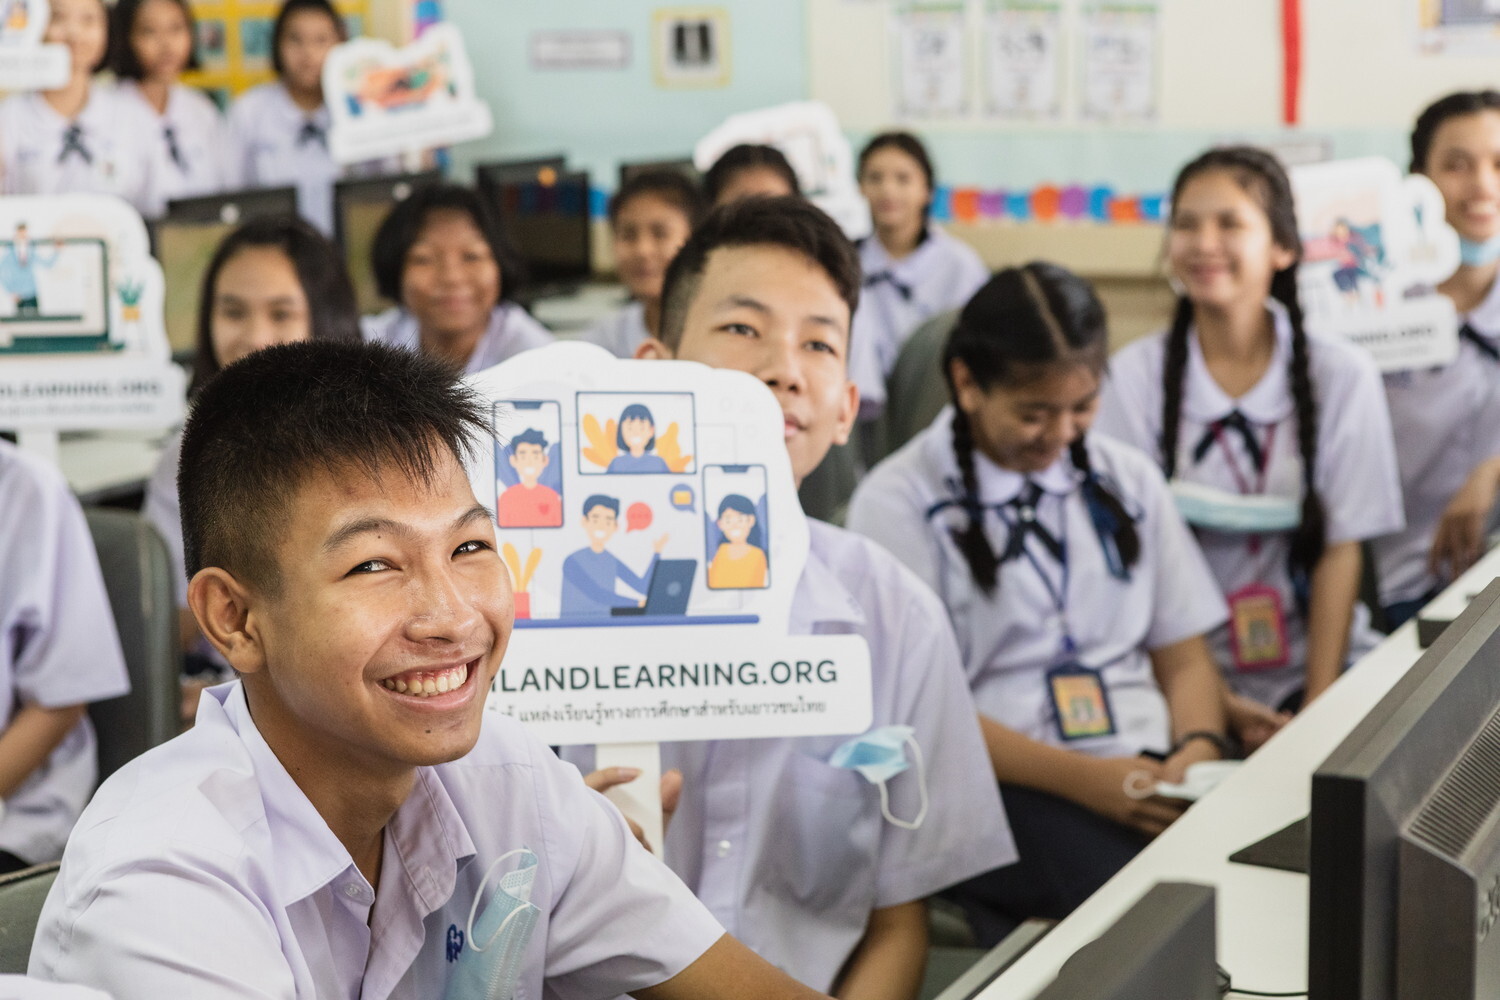 สถานทูตออสเตรเลีย แนะเด็กไทยใช้ Thailand learning เป็นทางเลือกในการศึกษาตลอดชีวิต ถึงโควิด 19 แพร่ระบาดก็หาความรู้ได้